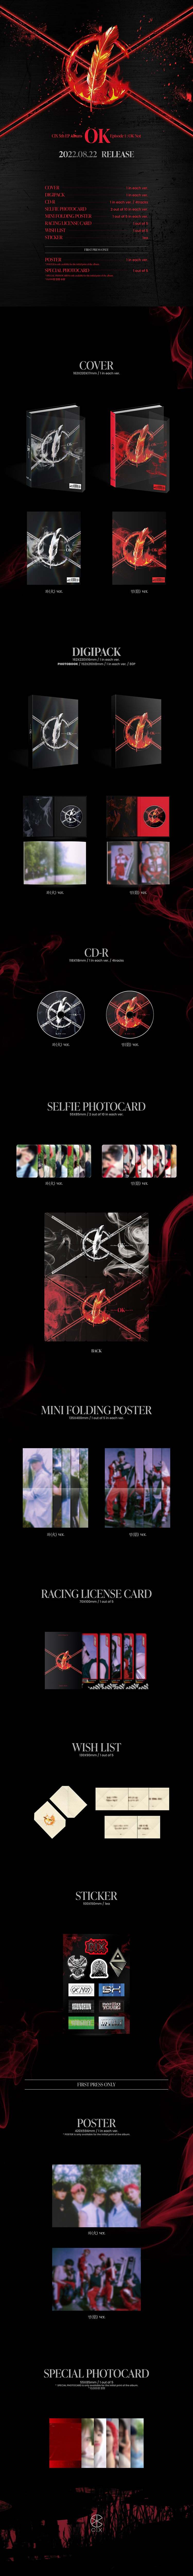 CIX 5TH EP ALBUM 'OK EPISODE 1 : OK NOT' DETAIL